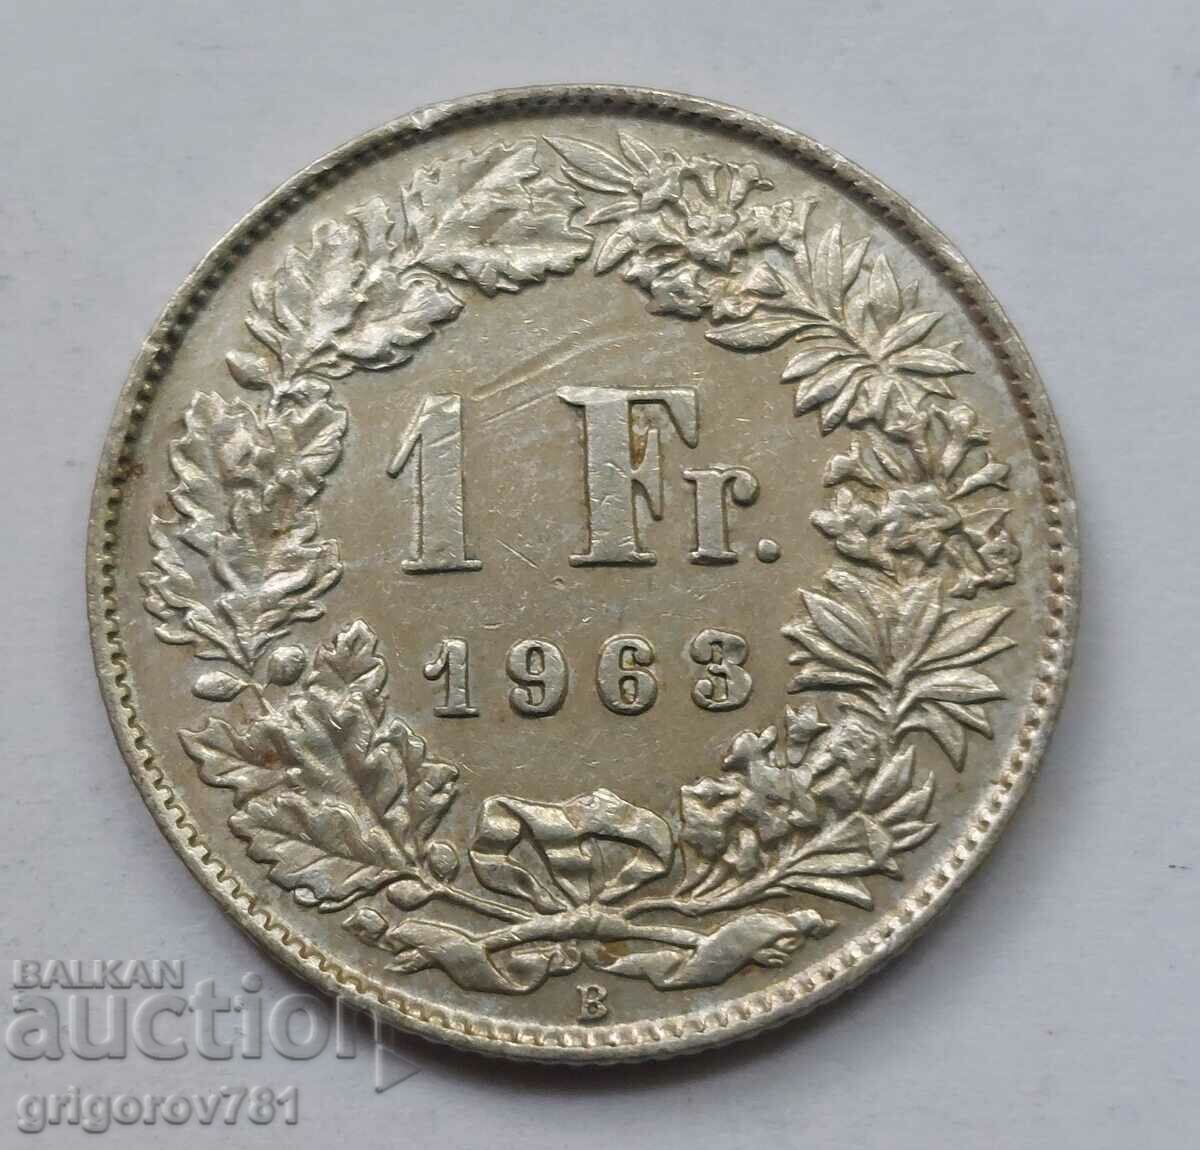 Ασημένιο 1 Φράγκο Ελβετία 1963 B - Ασημένιο νόμισμα #35